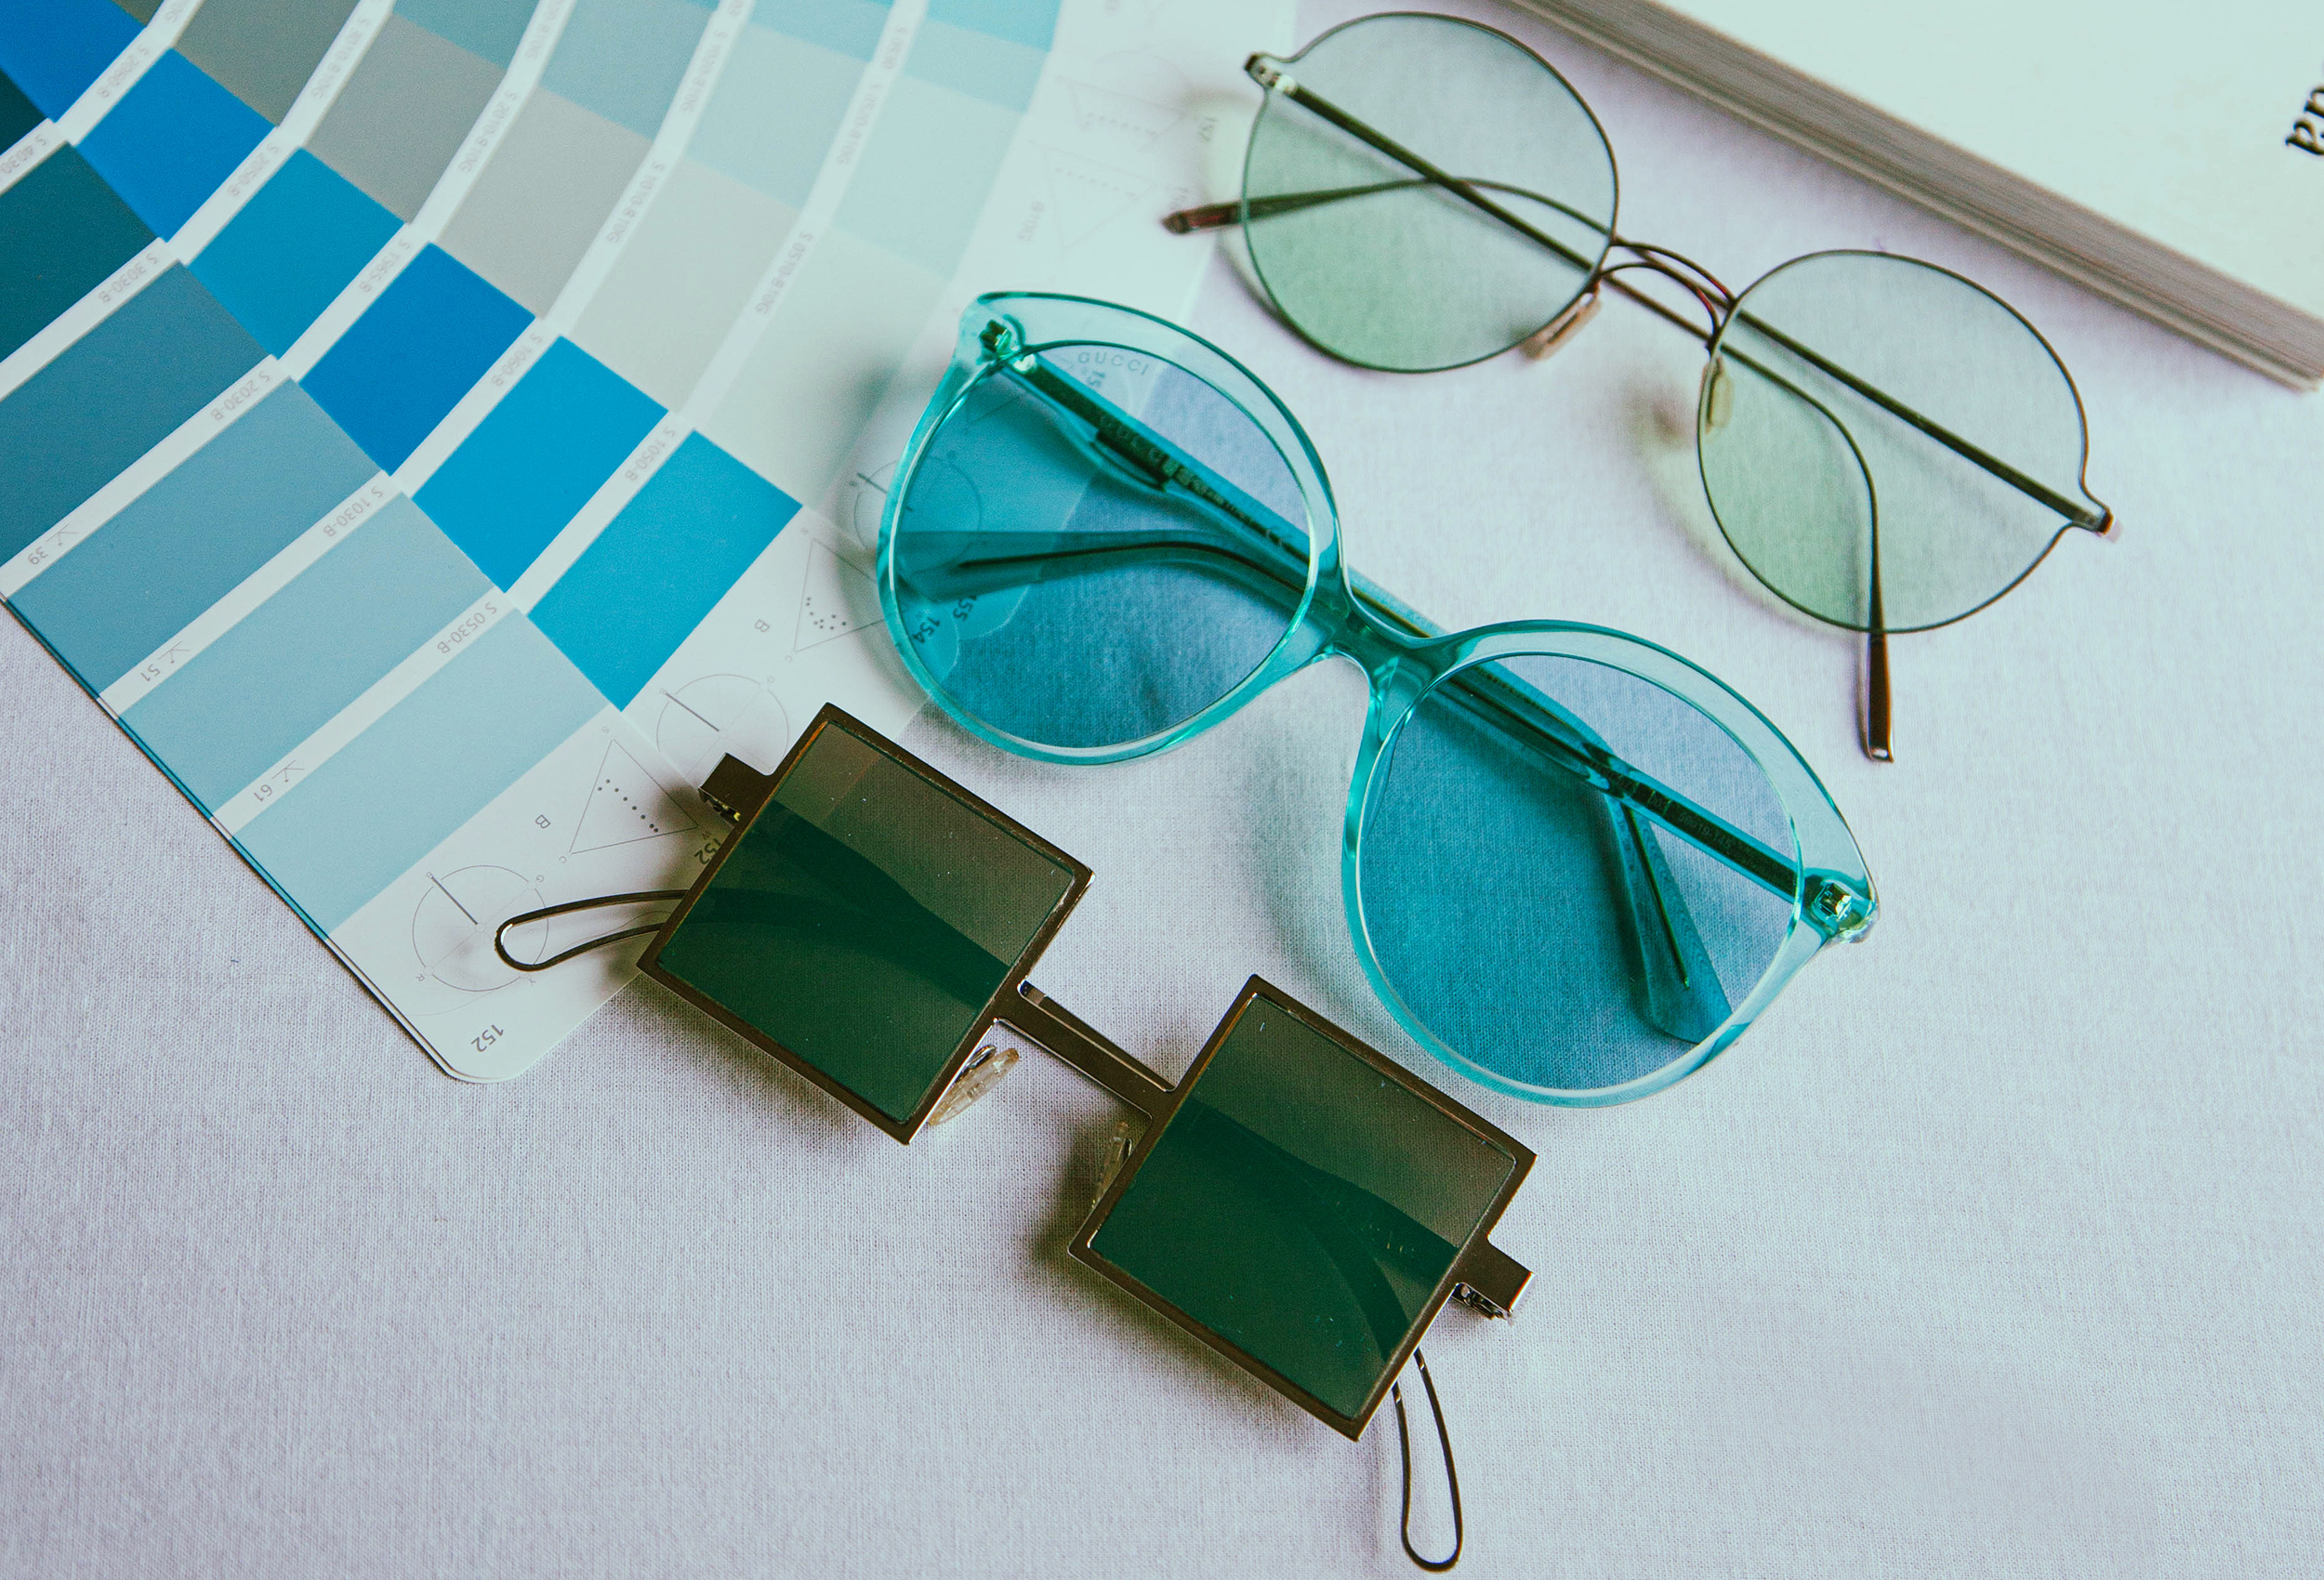 Achievement curb concept Le forme di occhiali ideali per ogni viso - Consulente di immagine Angelica  Pagnelli | Angelica Pagnelli Image Consultant & Eyewear Style Strategist